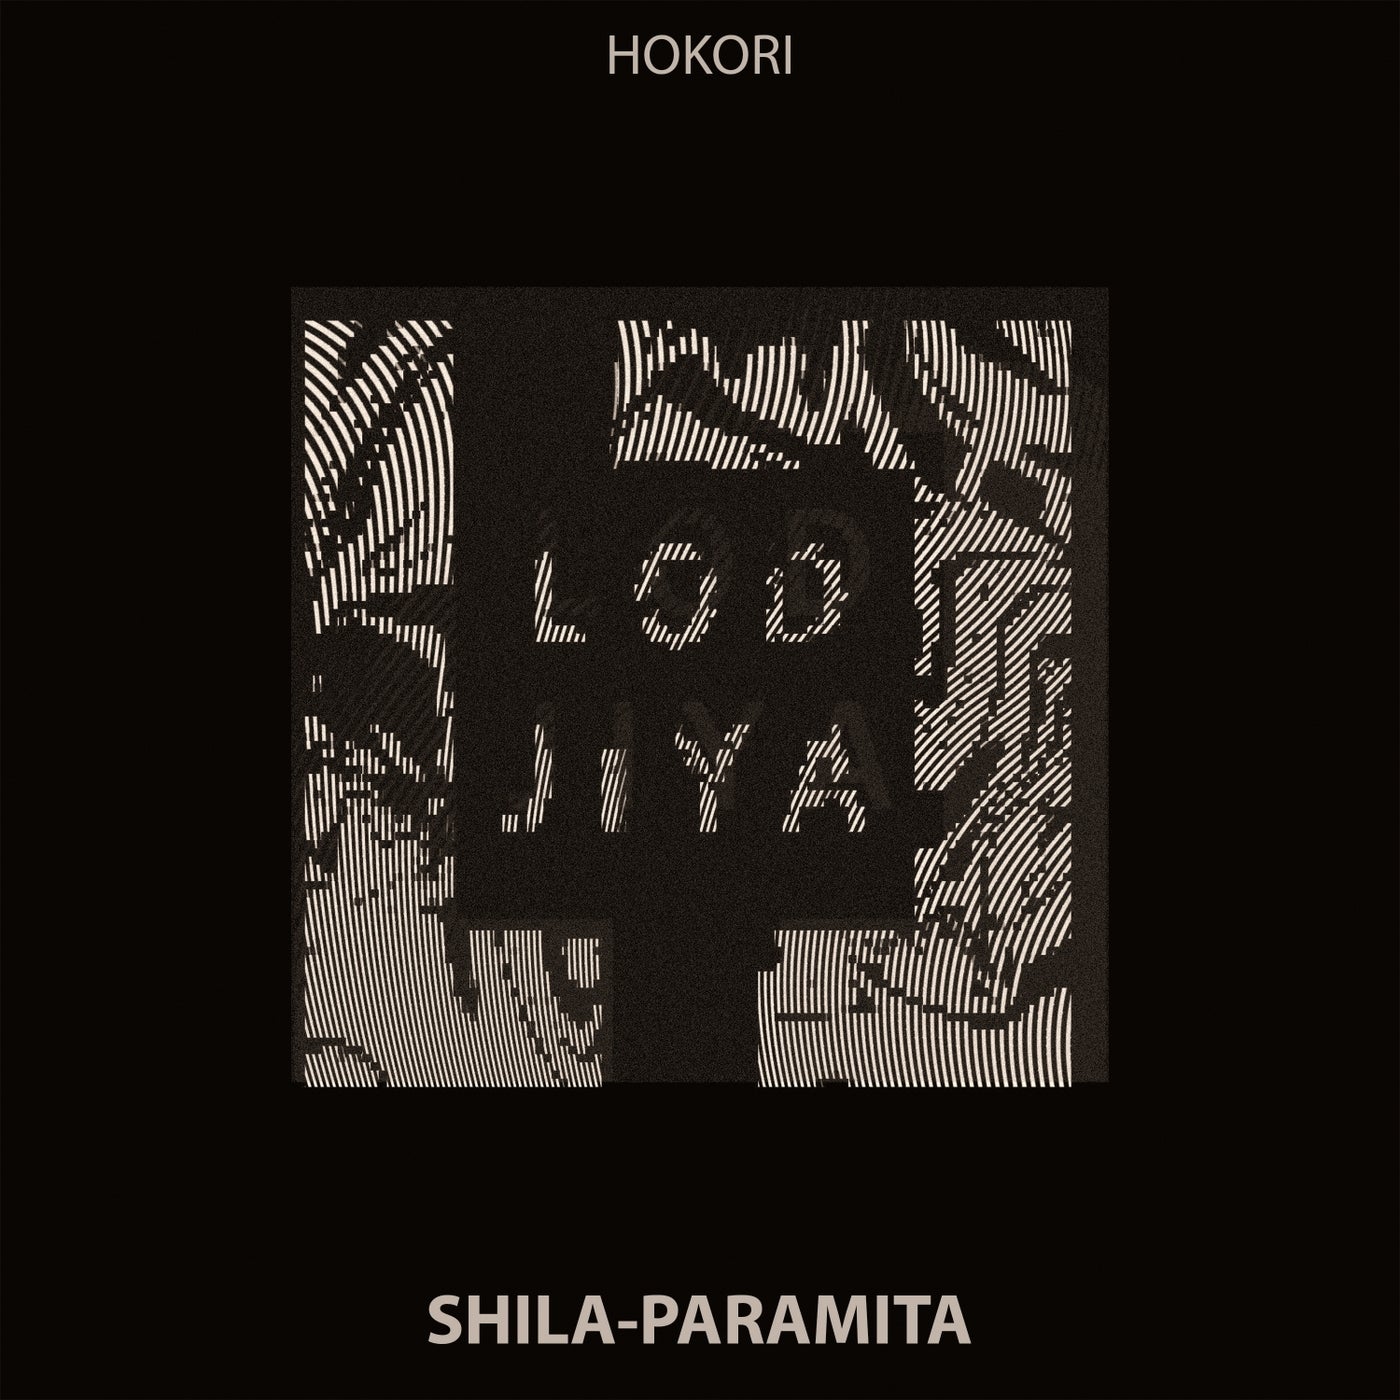 Shila-Paramita